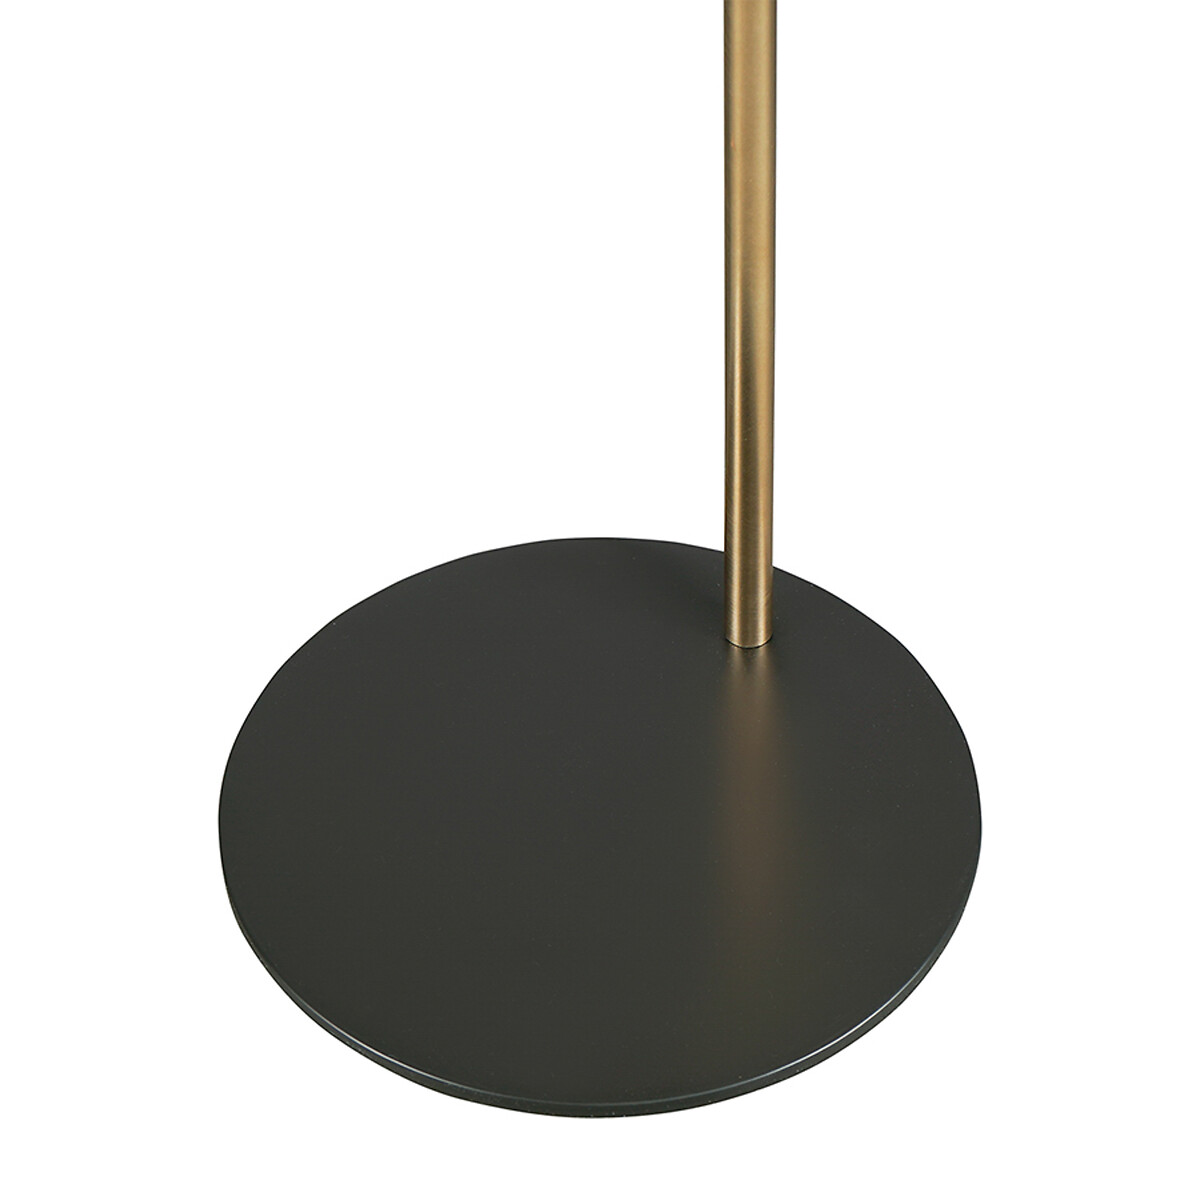 Торшер Enkel Kopp 142 см черныйзолотистый  единый размер золотистый LaRedoute - фото 4